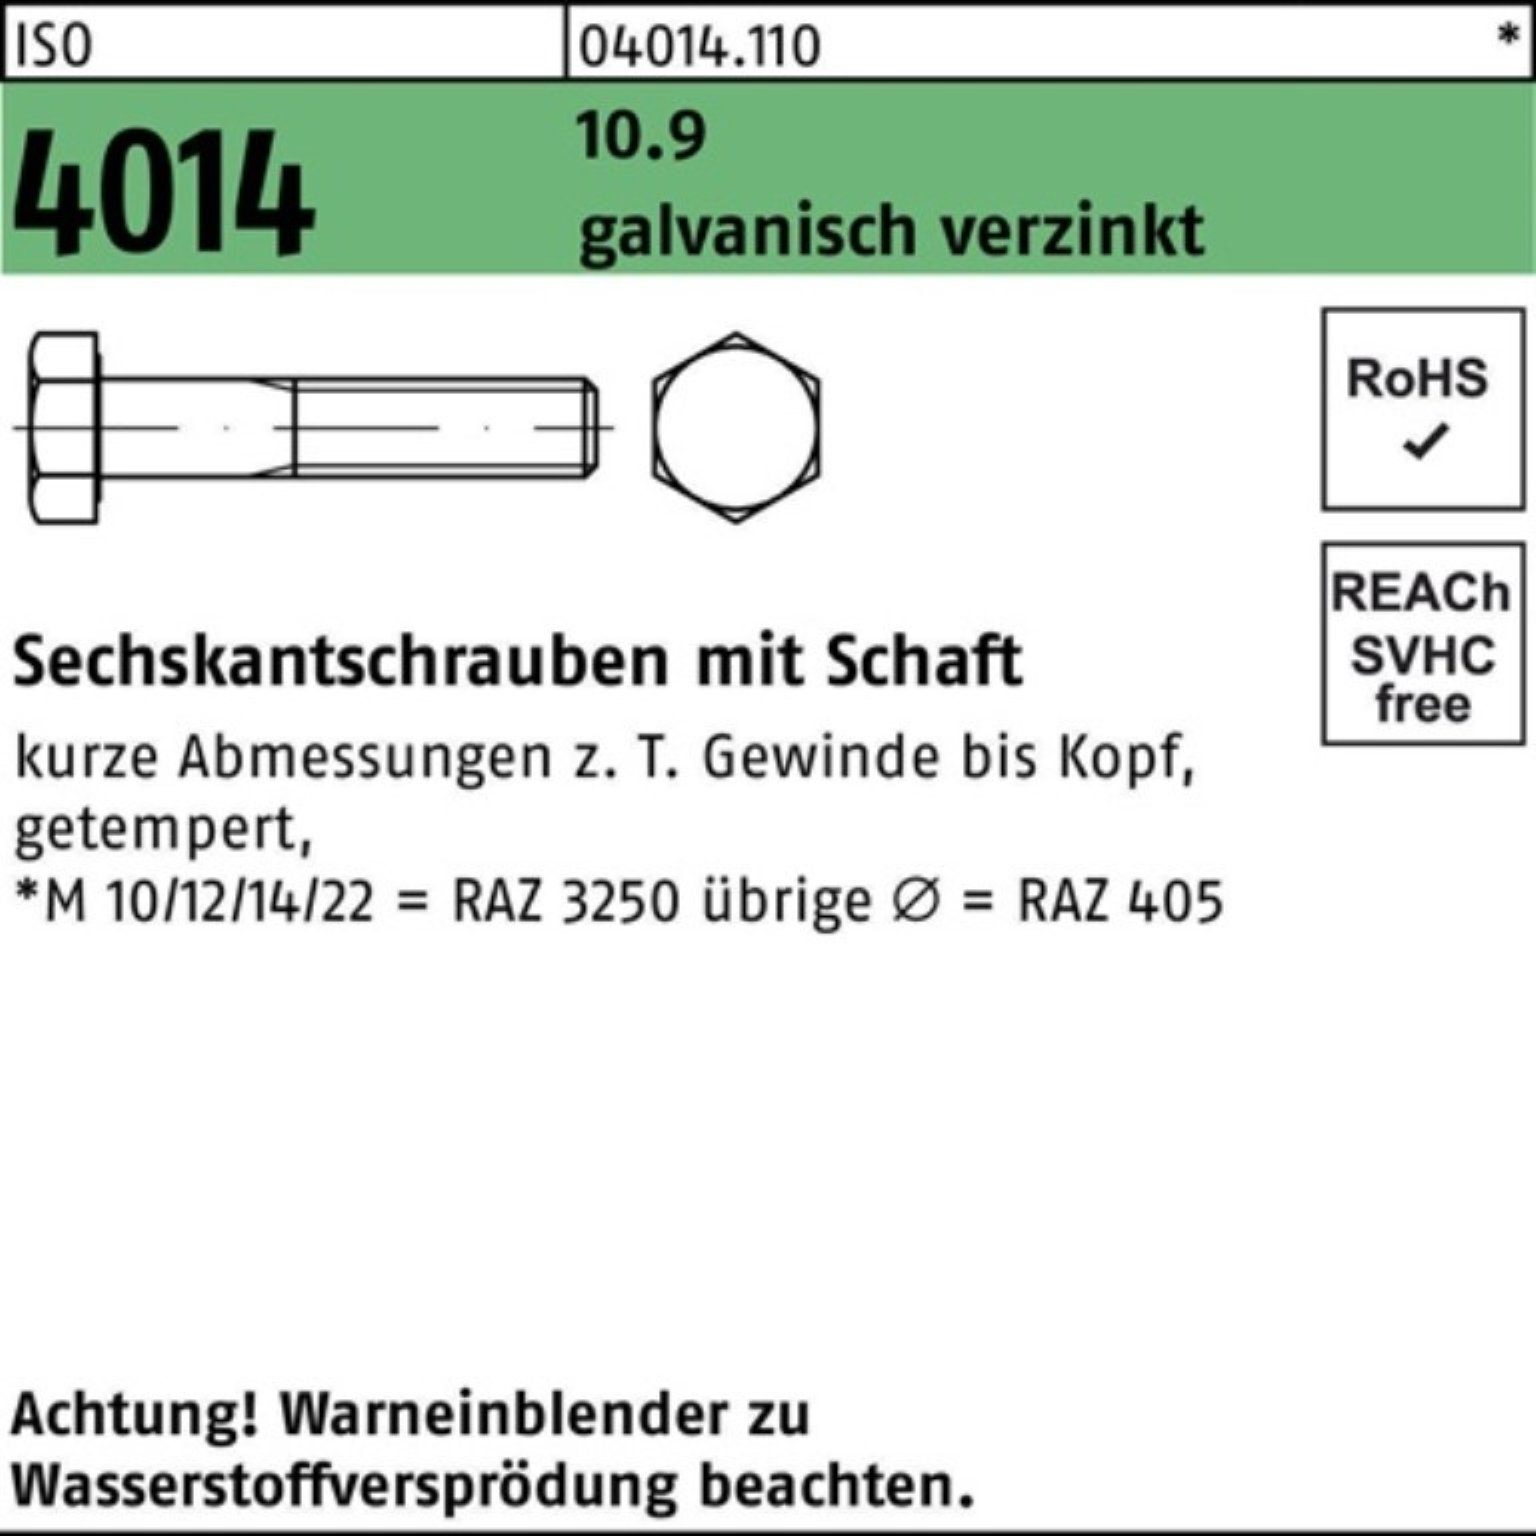 M24x 100er galv.verz. 10.9 ISO Sechskantschraube Schaft 4014 Pack 270 Bufab Sechskantschraube